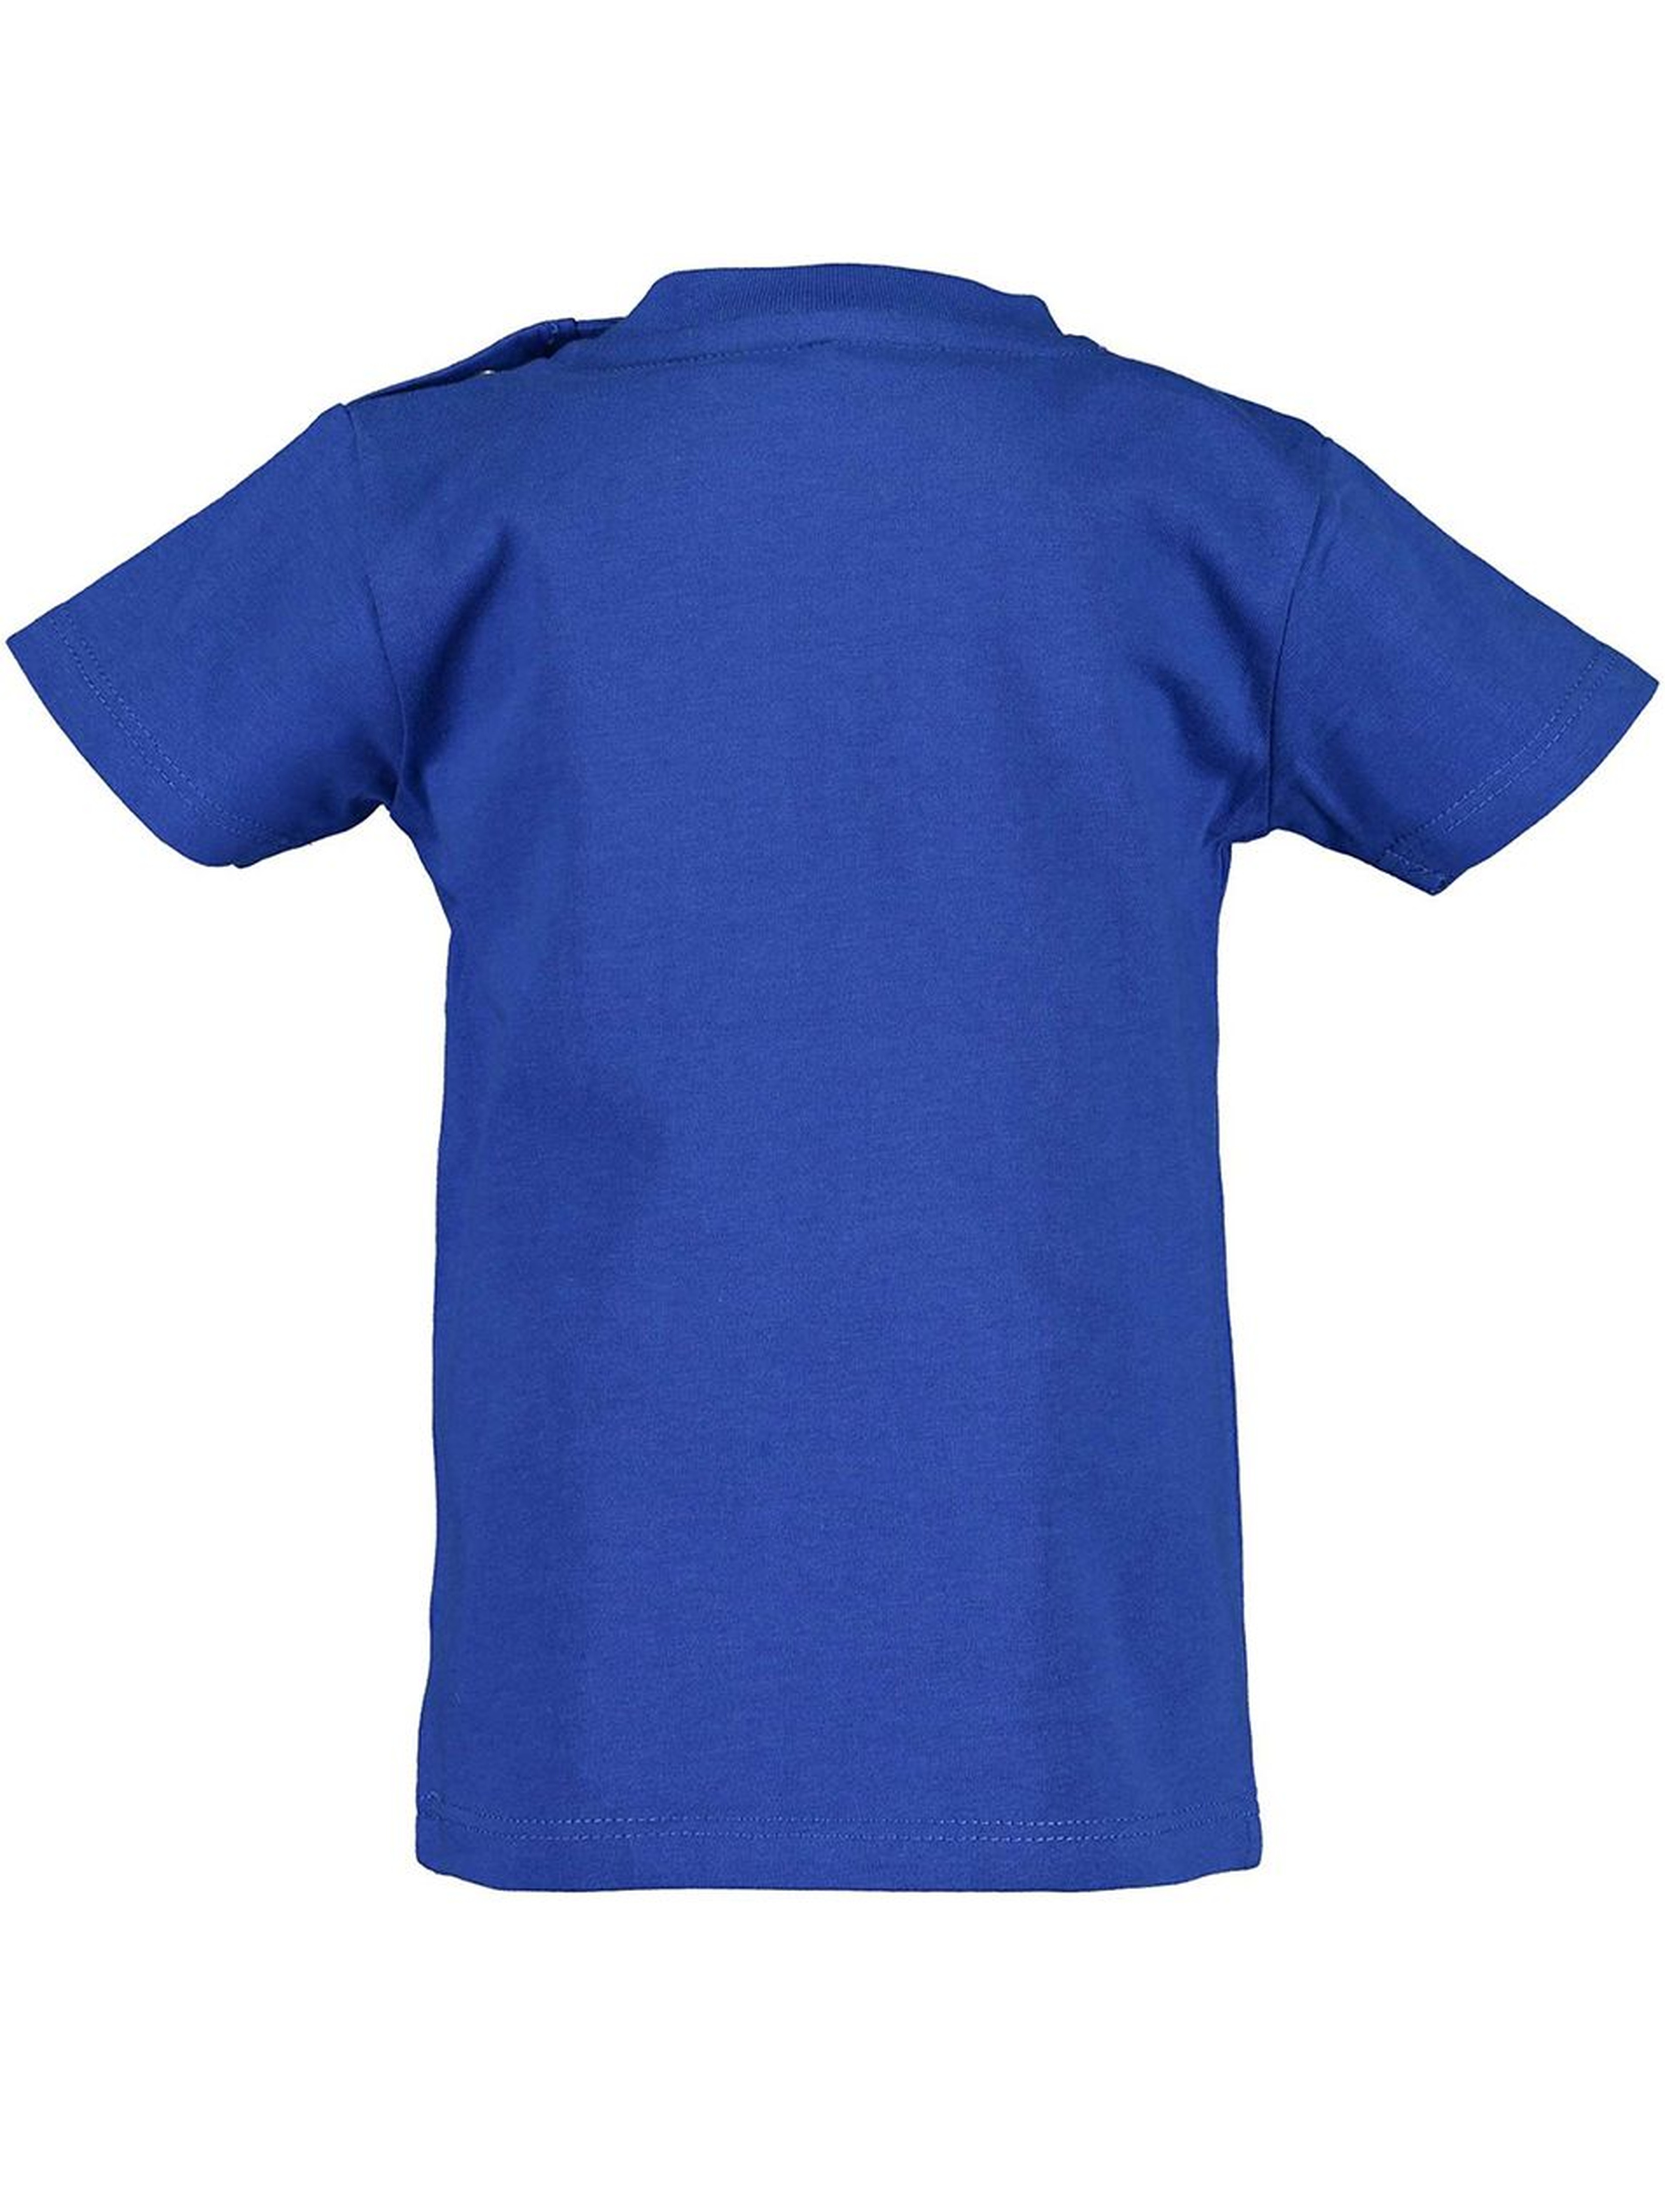 Koszulka chłopięca niebieska z samochodzikami